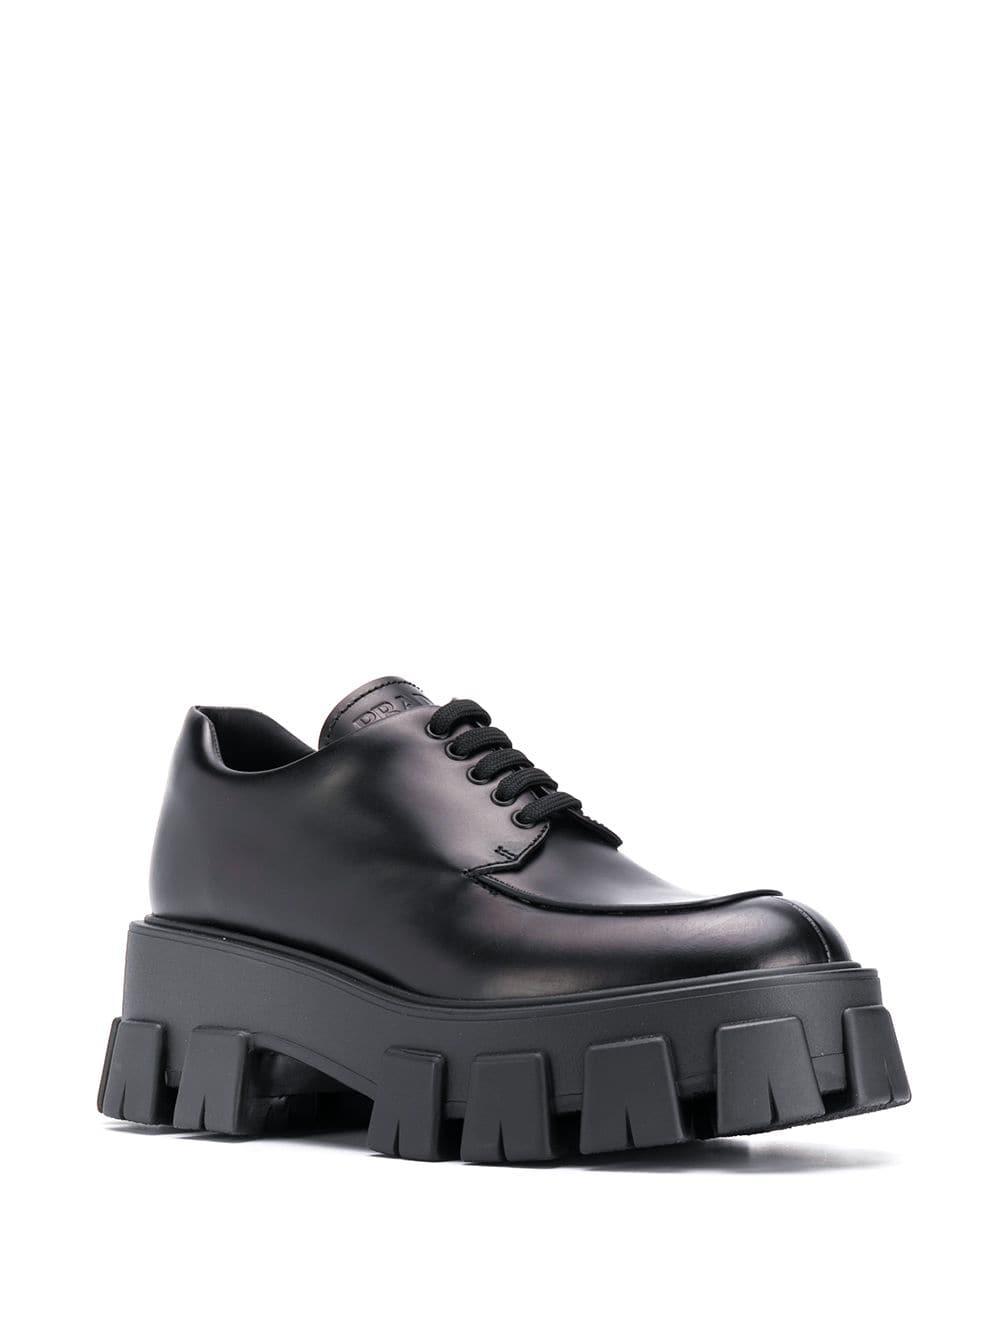 black platform lace up shoes